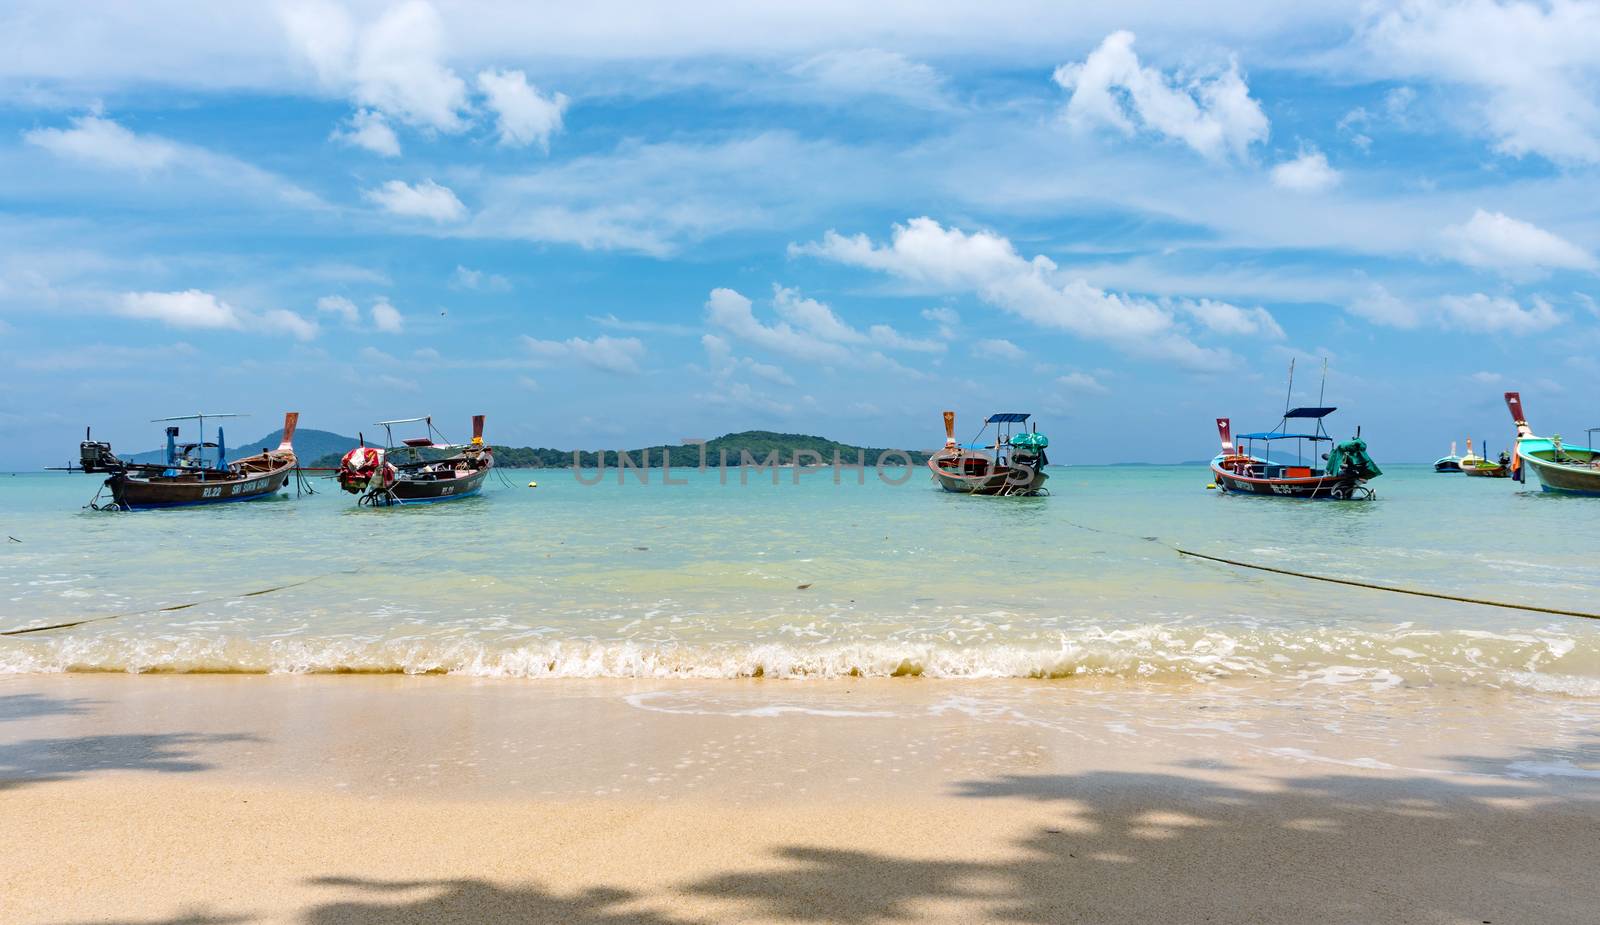 Phuket, Thailand - 06 August 2020: Fishing boats moored at Chalong Bay Pier.